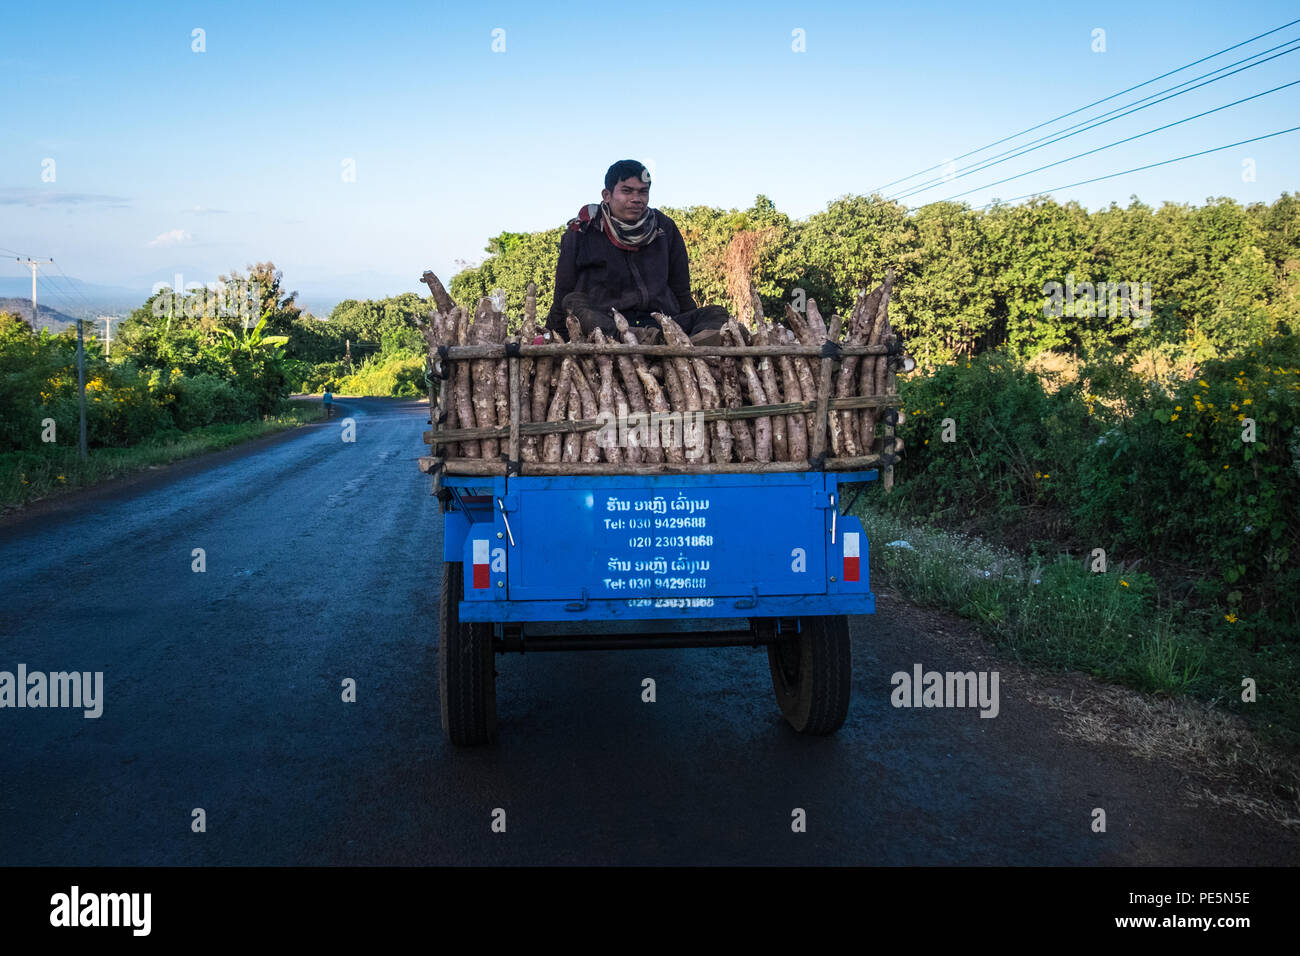 Un agriculteur avec une récolte de racine de manioc sur son camion dans le Plateau des Bolavens, Laos Banque D'Images